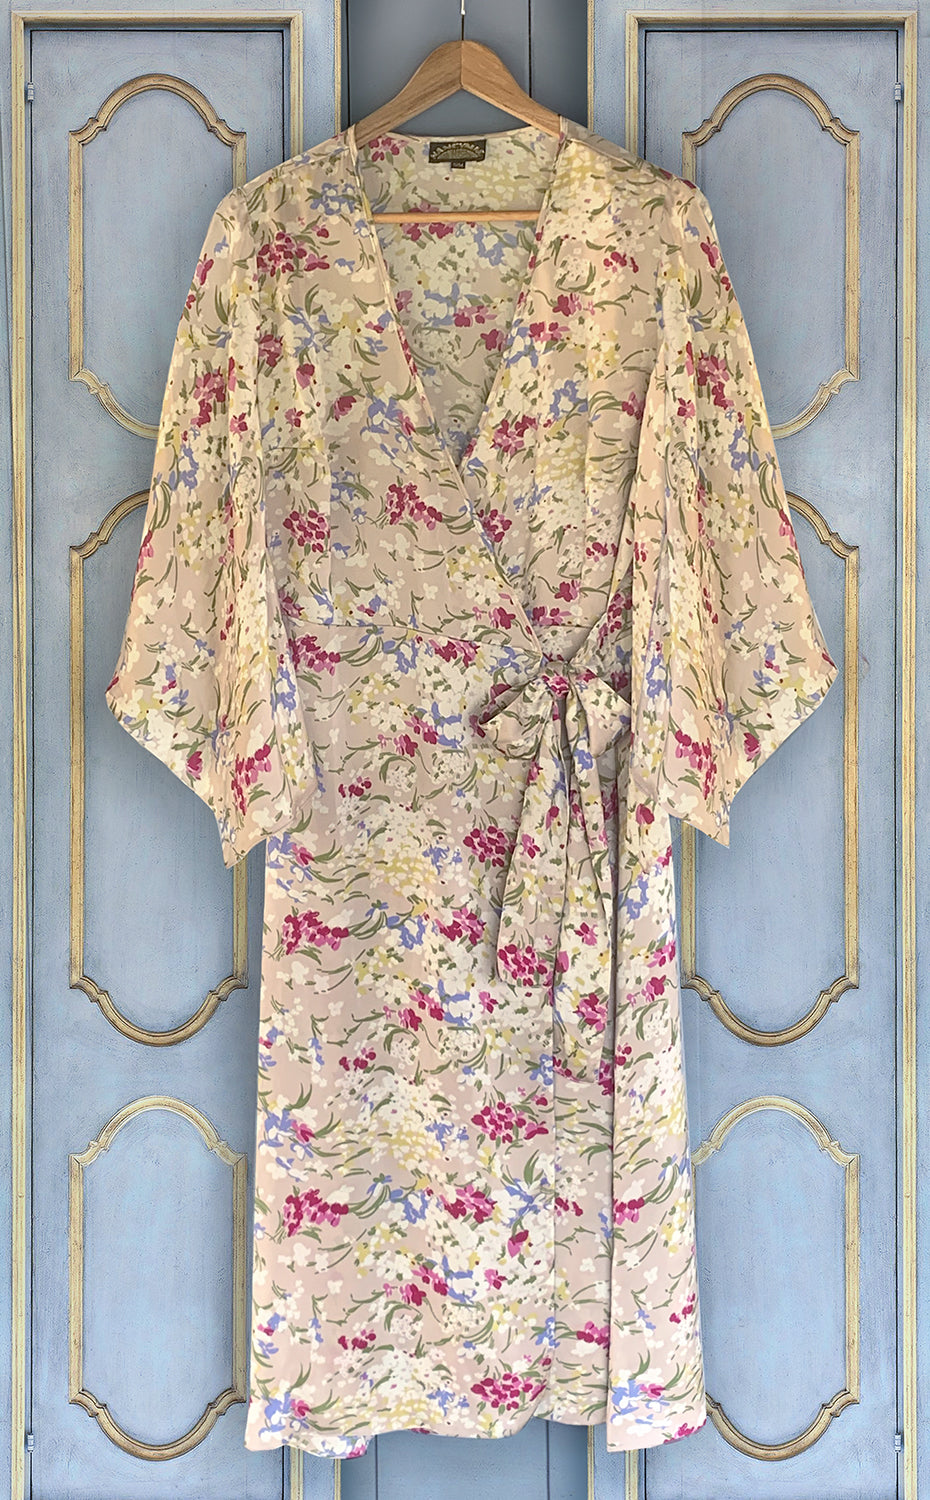 Kimono wrap dress in blush floral print crepe - Nancy Mac